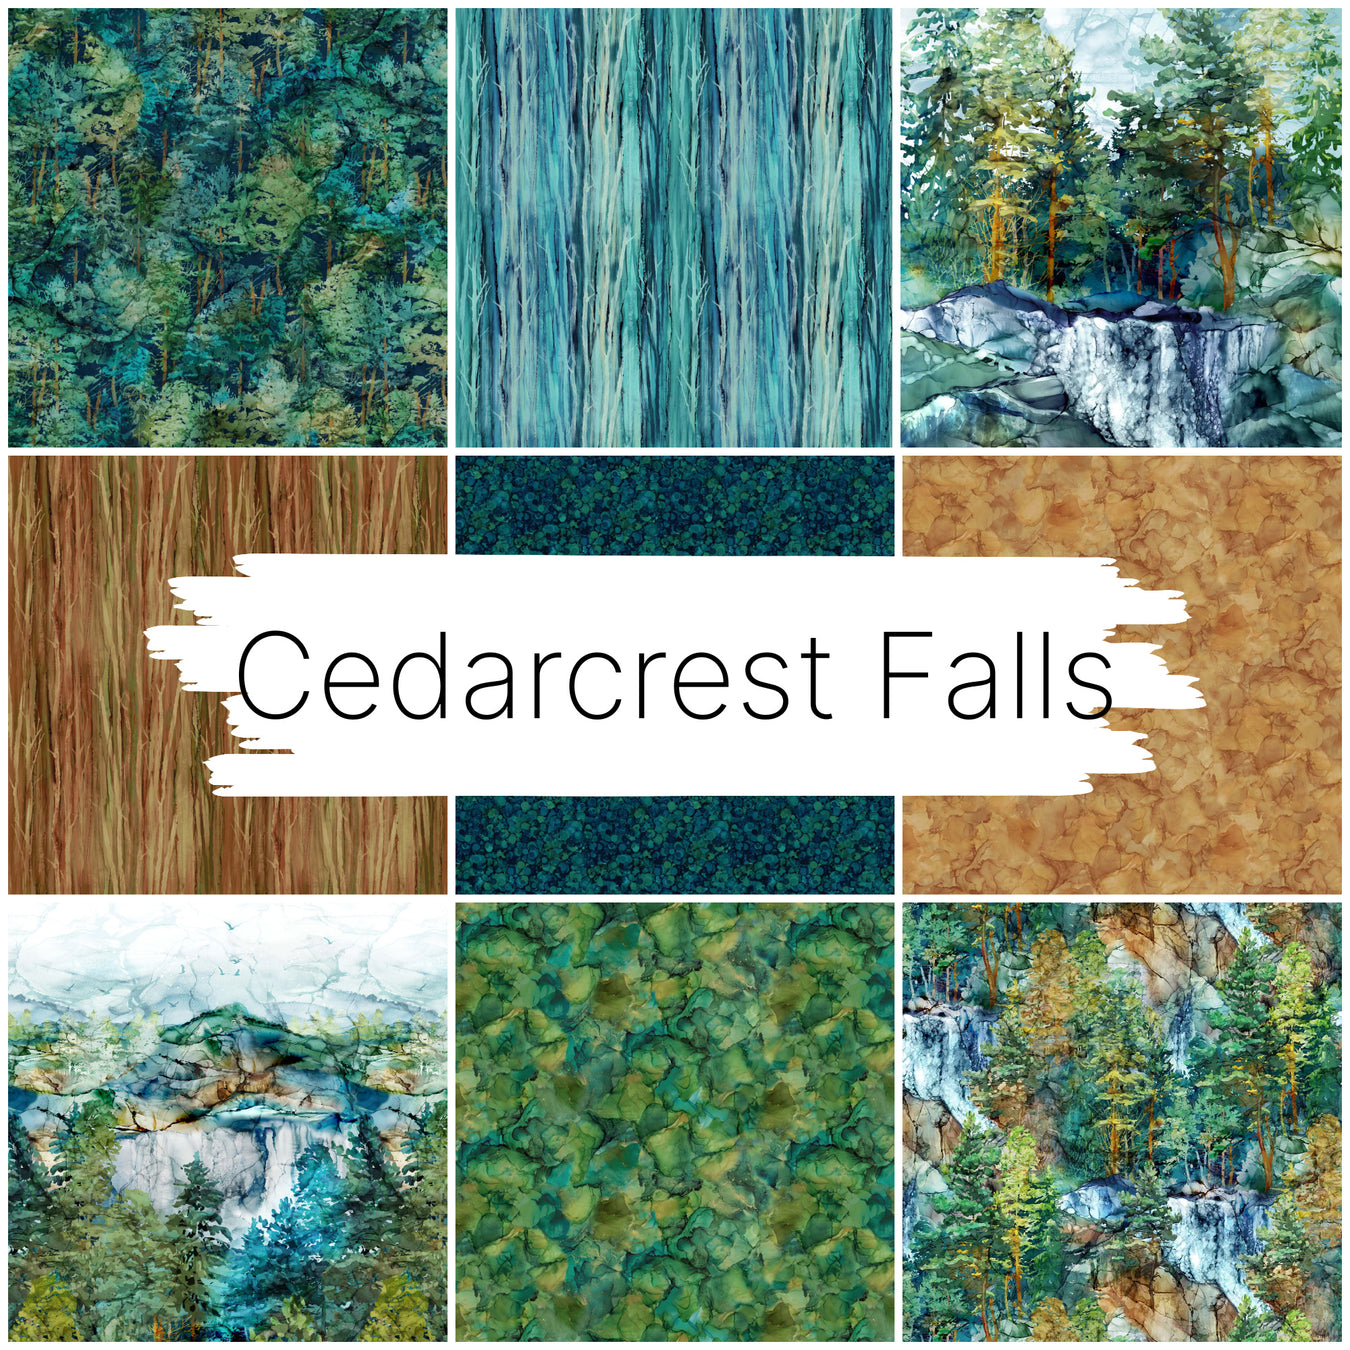 Cedarcrest Falls